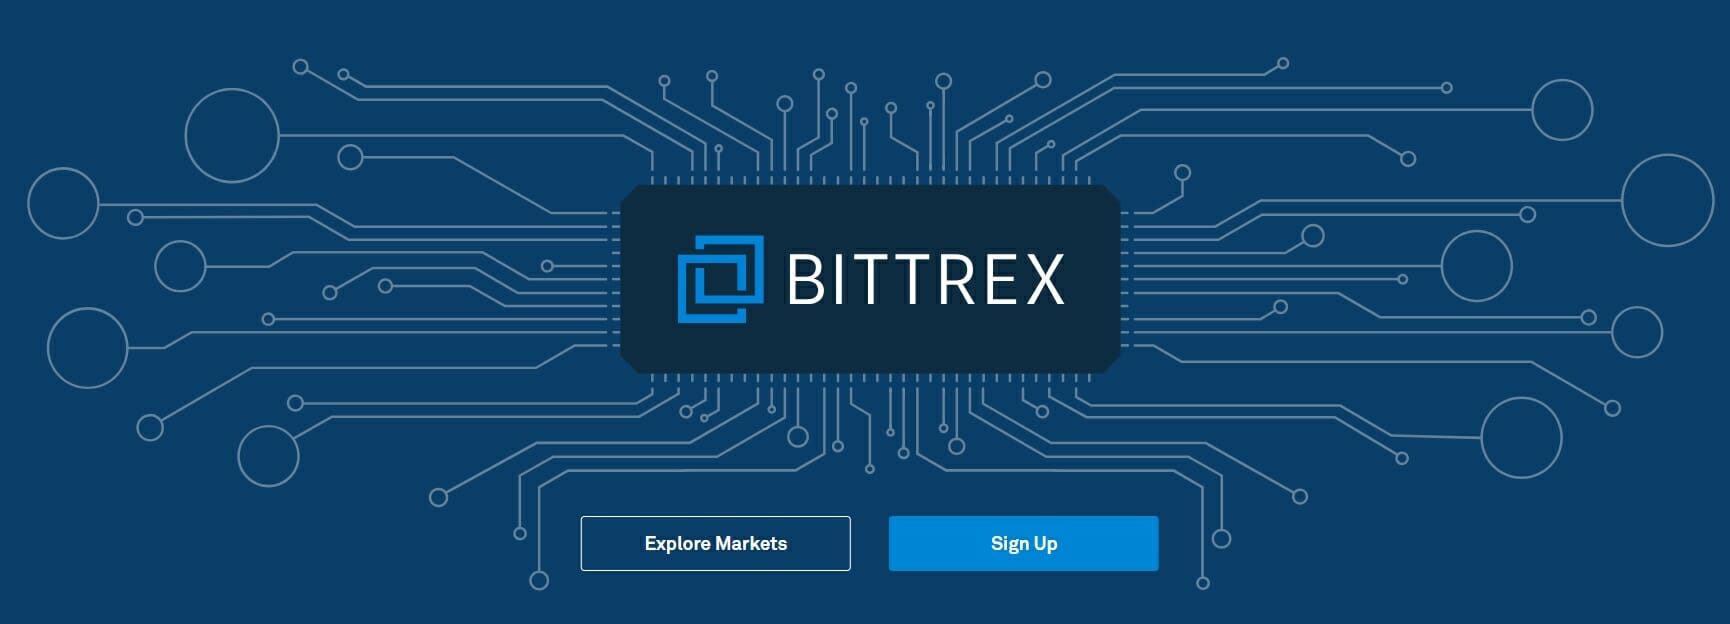 Plataforma de negociação Bittrex